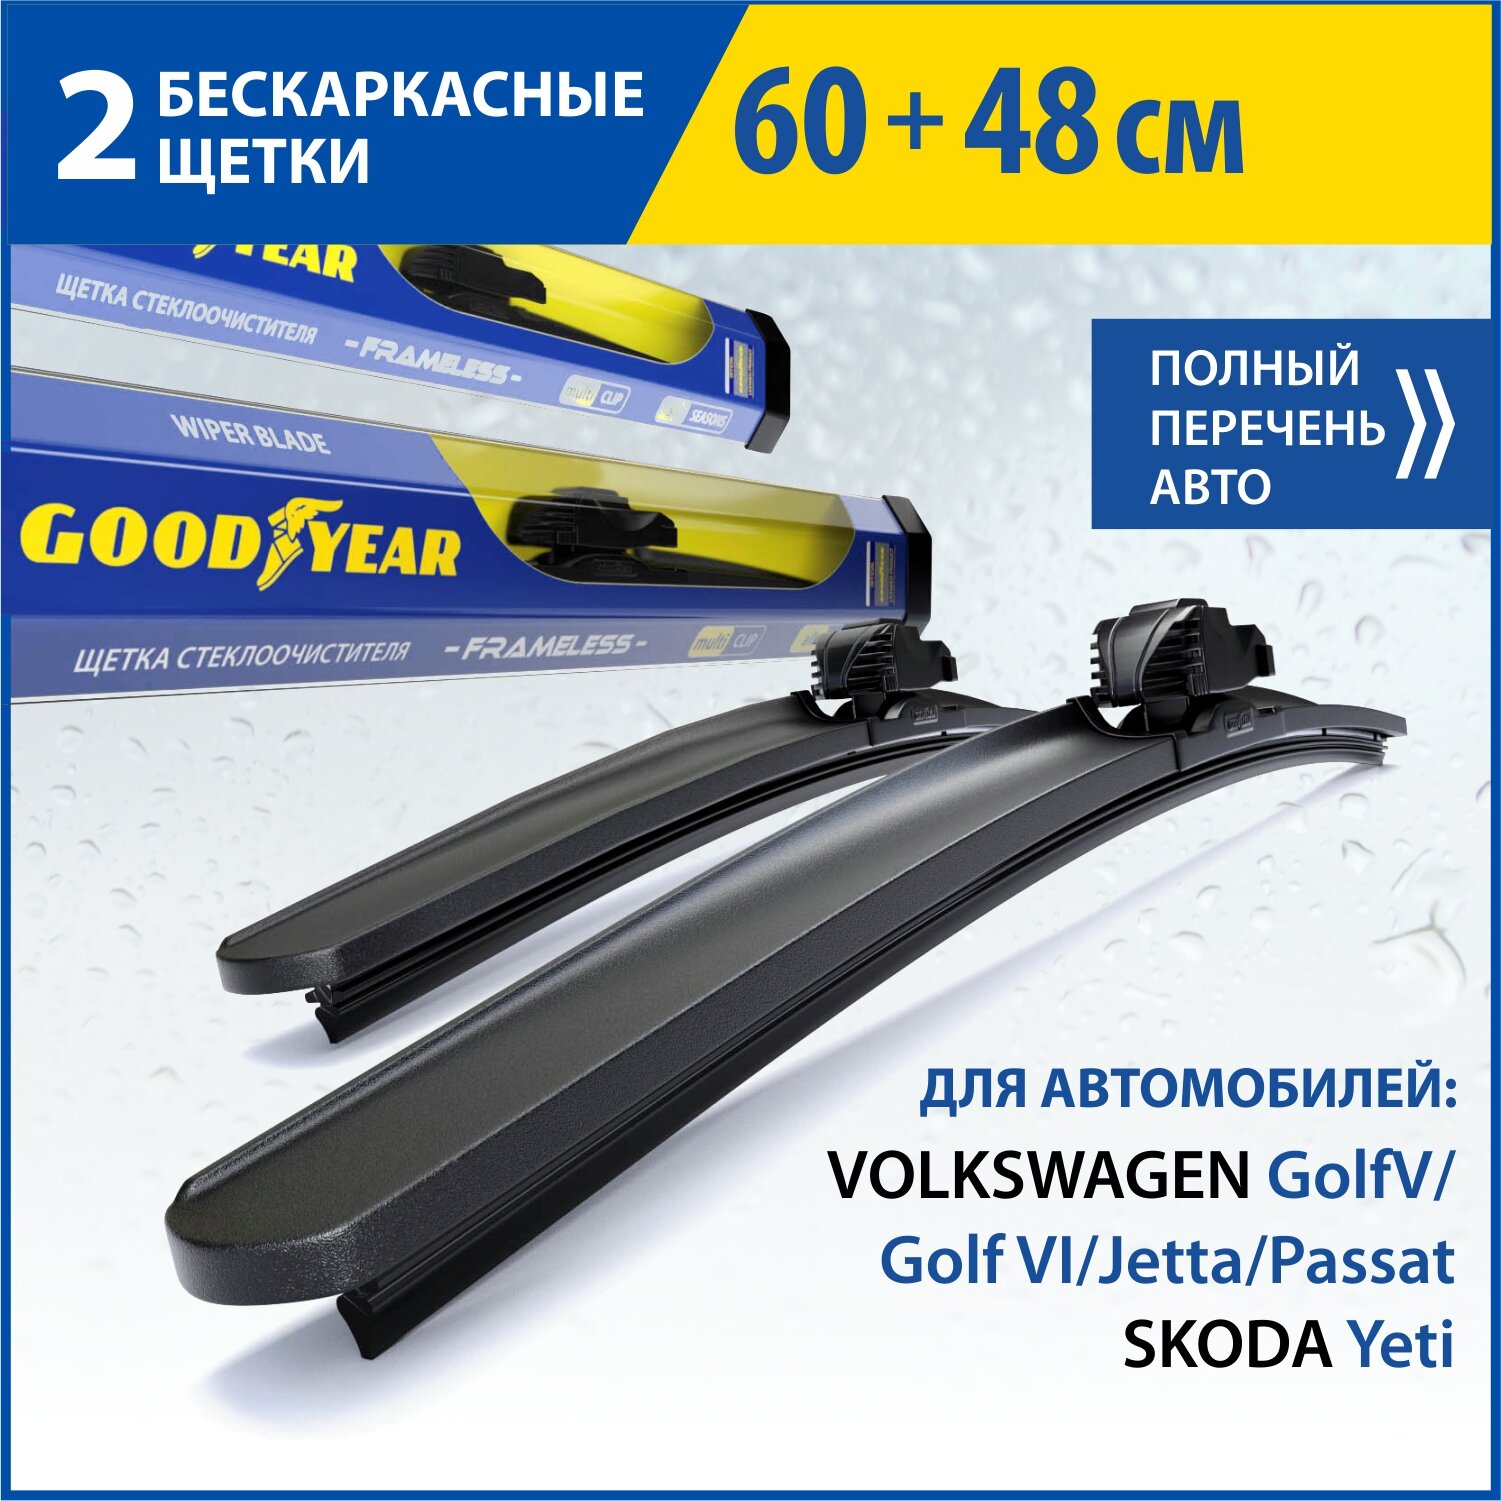 2 Щетки стеклоочистителя в комплекте (60+48 см), Дворники для автомобиля GOODYEAR для VW GolfV VI Jetta(05-10) Passat(05-12) SKODA Yeti